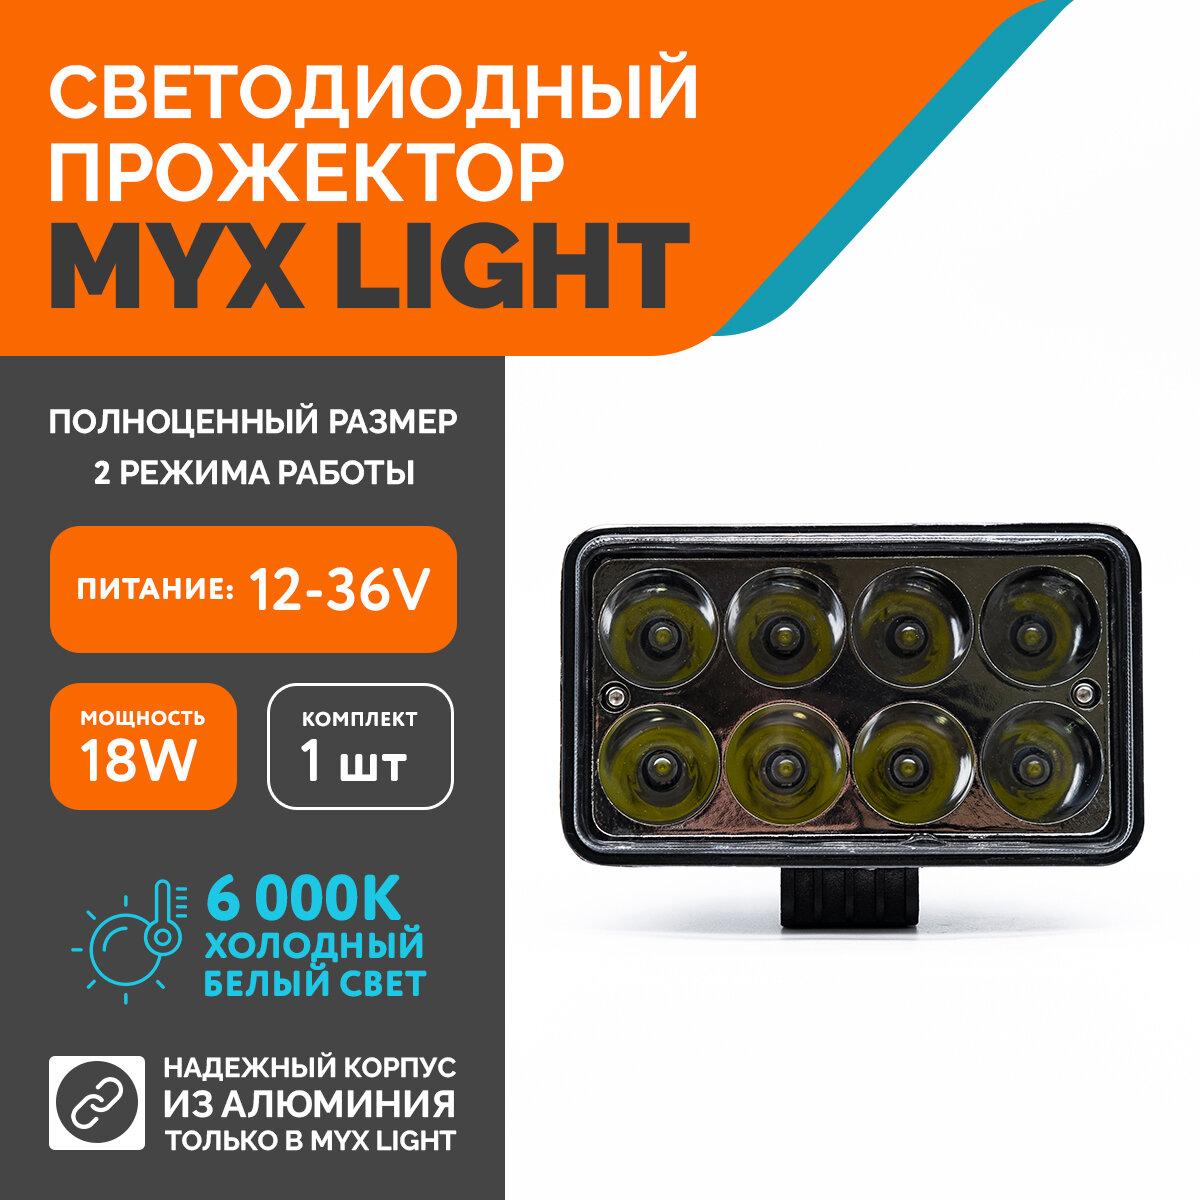 Светодиодная противотуманная фара для авто MYX-Light 12-36V мощность 18W 6000K прожектор дневные ходовые огни для легковых и грузовых авто джипов квадроциклов 1шт